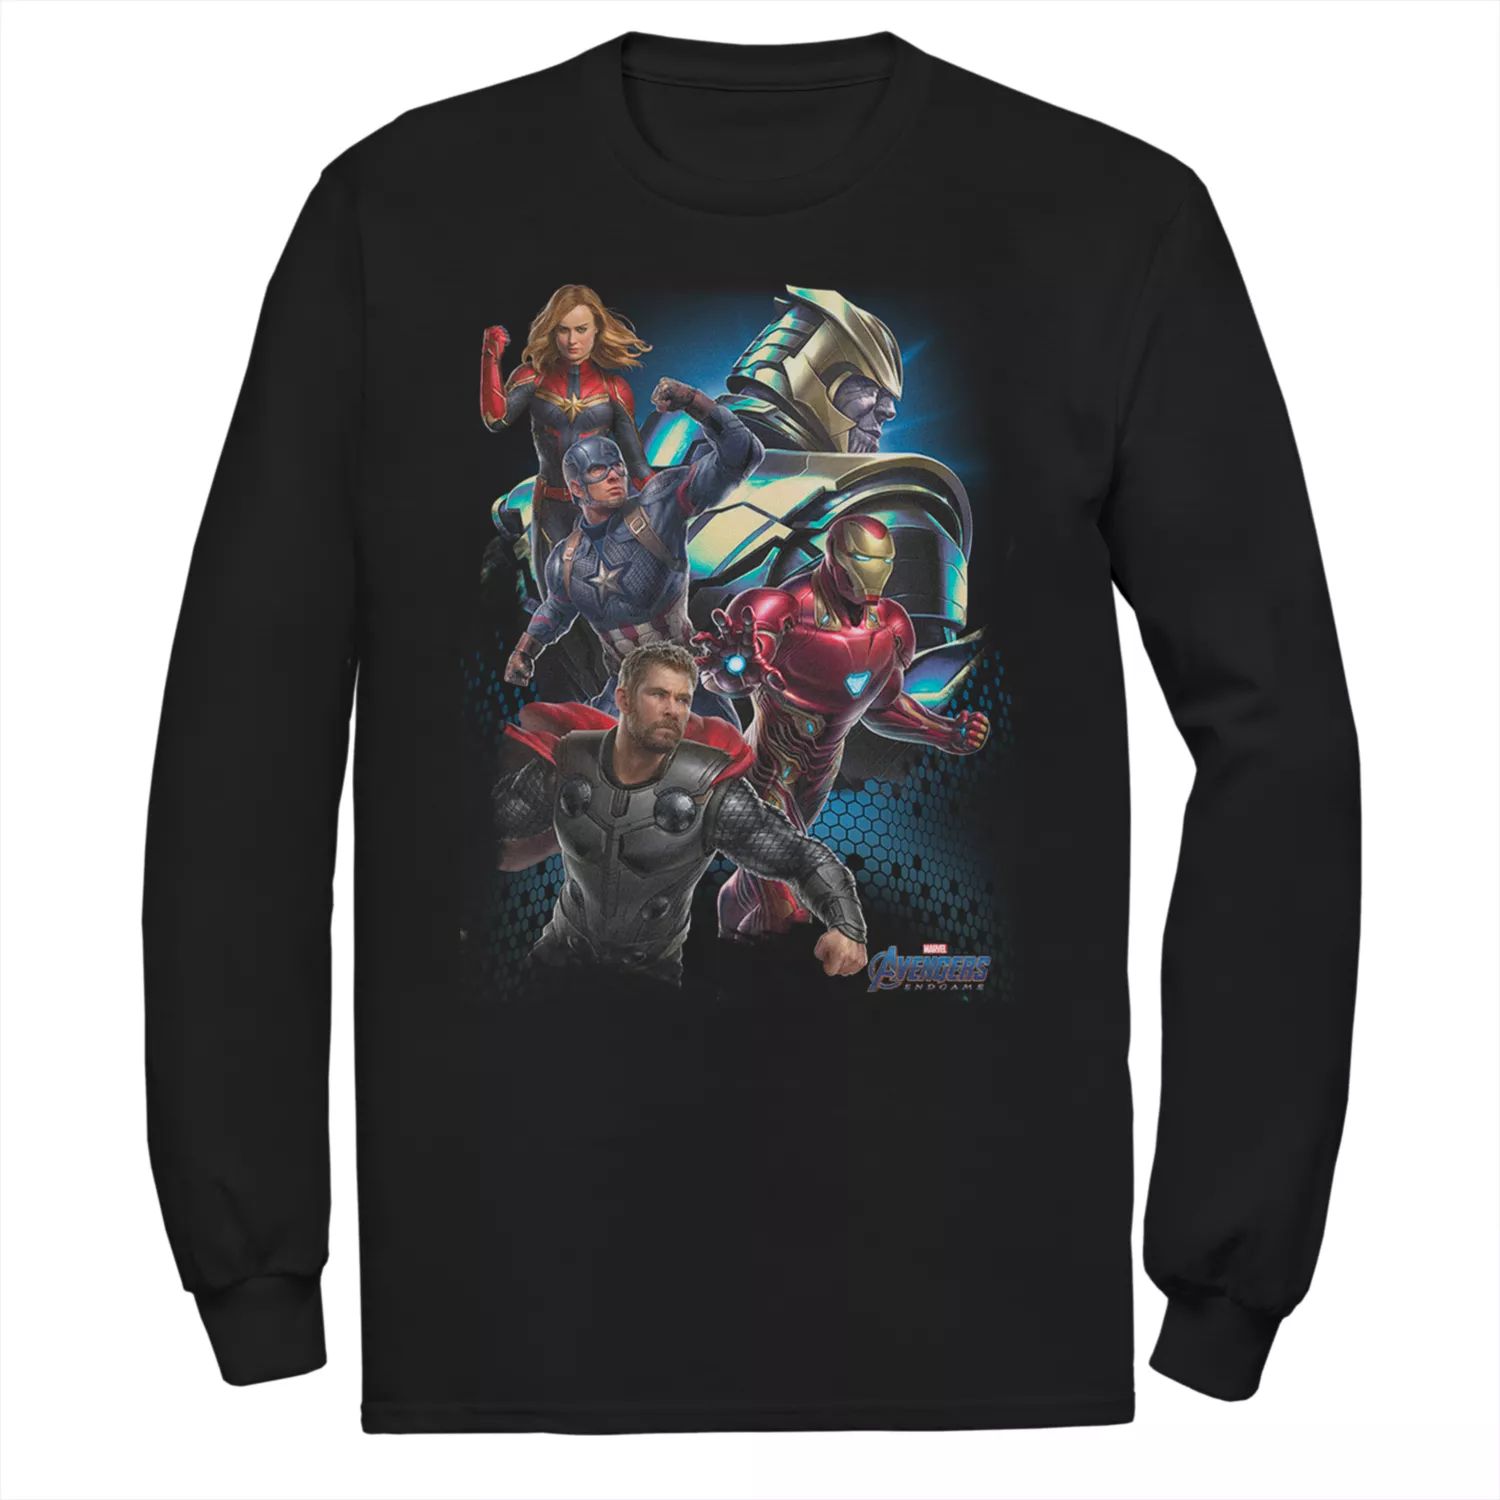 Мужская футболка группы Avengers Endgame Licensed Character